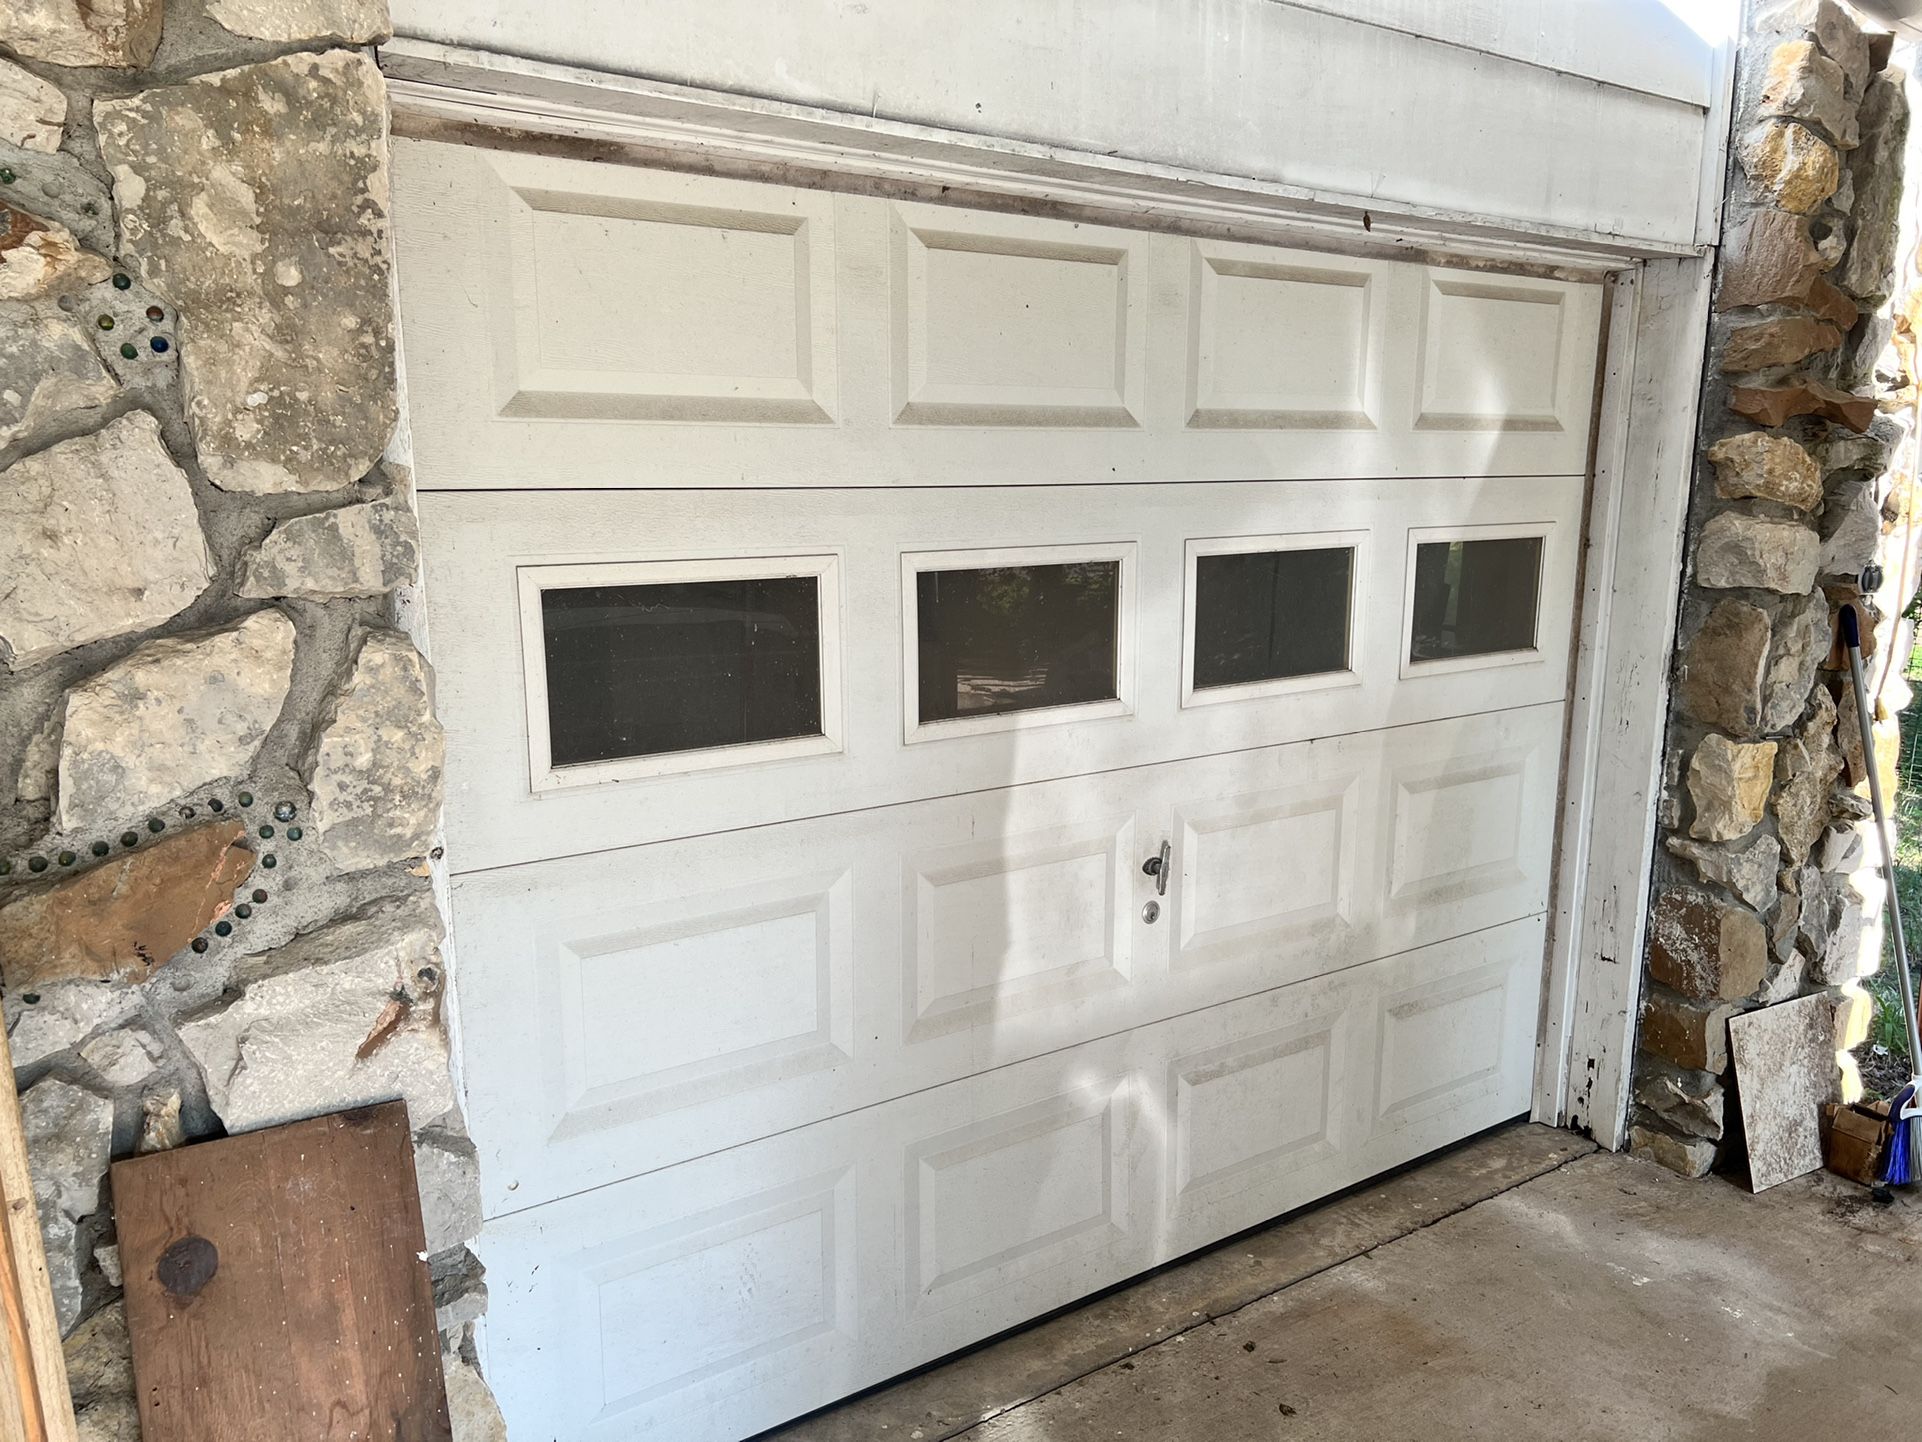 2 Garage Doors 